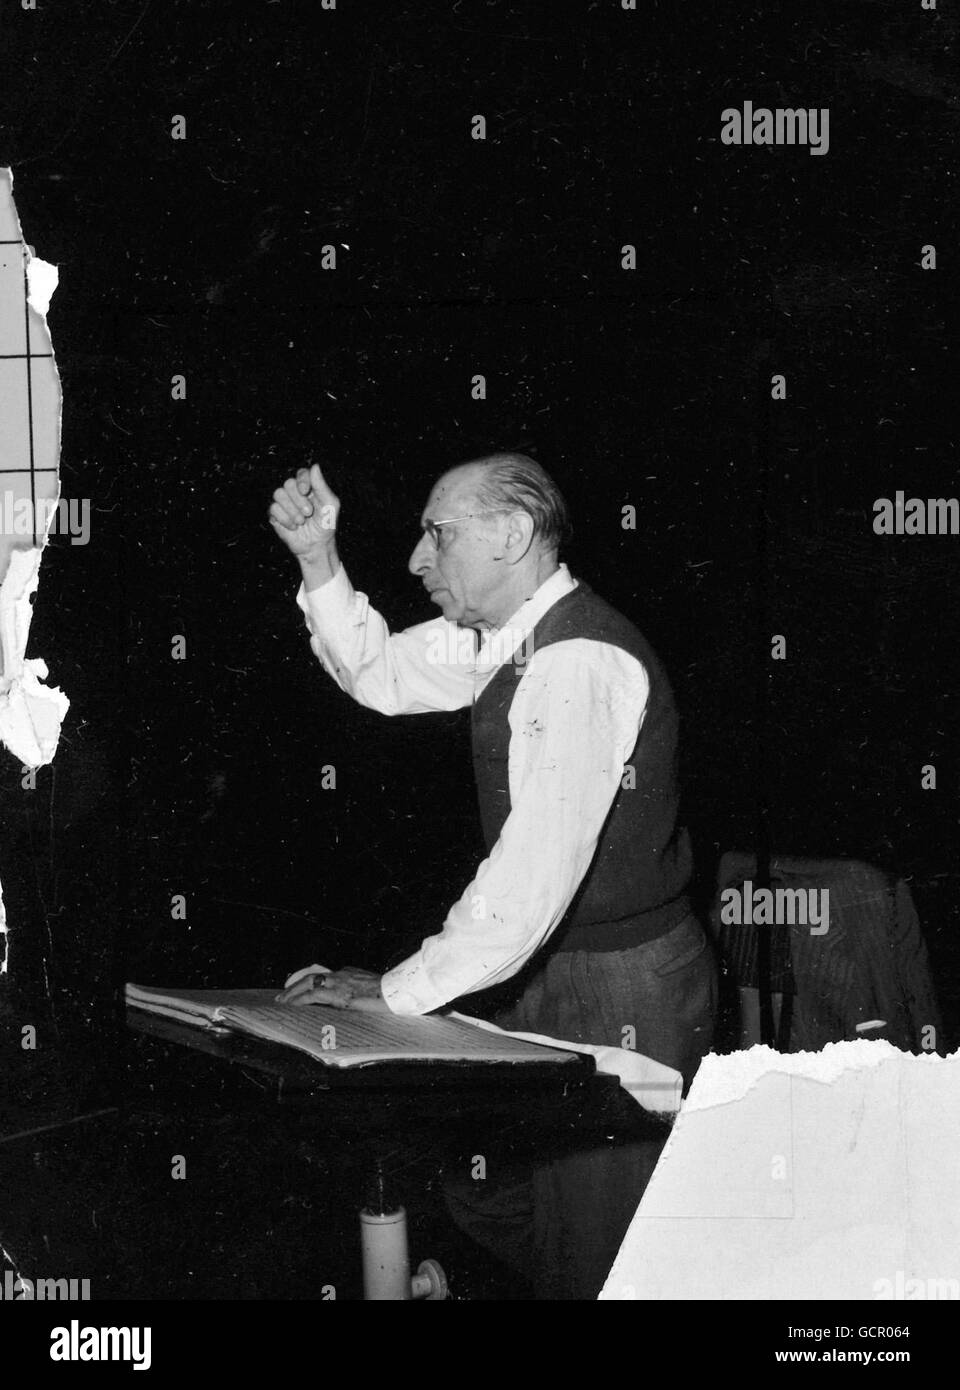 Le compositeur né en Russie Igor Stravinsky, décédé à New York le 6 avril 1971 à l'âge de 88 ans, est photographié alors qu'il répète l'Orchestre philharmonique royal au Royal Festival Hall de Londres, pour un concert de ses propres œuvres à Circa Date 1954. Banque D'Images